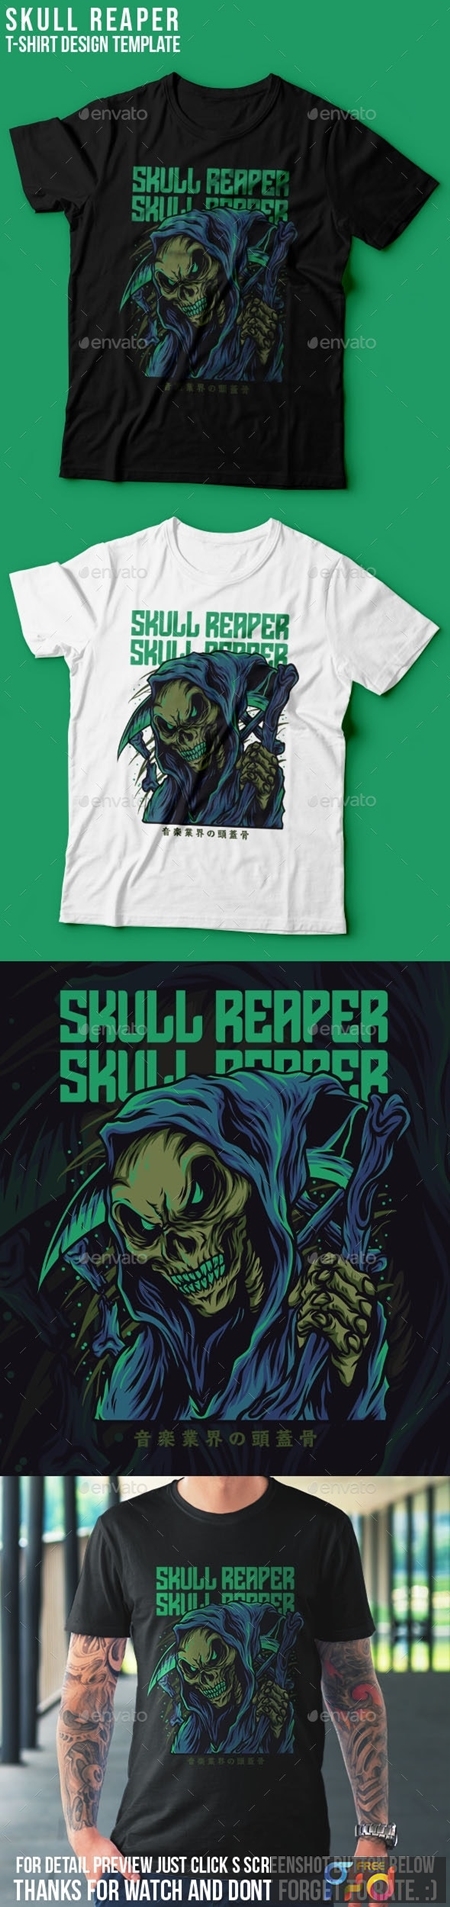 Skull Reaper T-Shirt Design 25672416 1